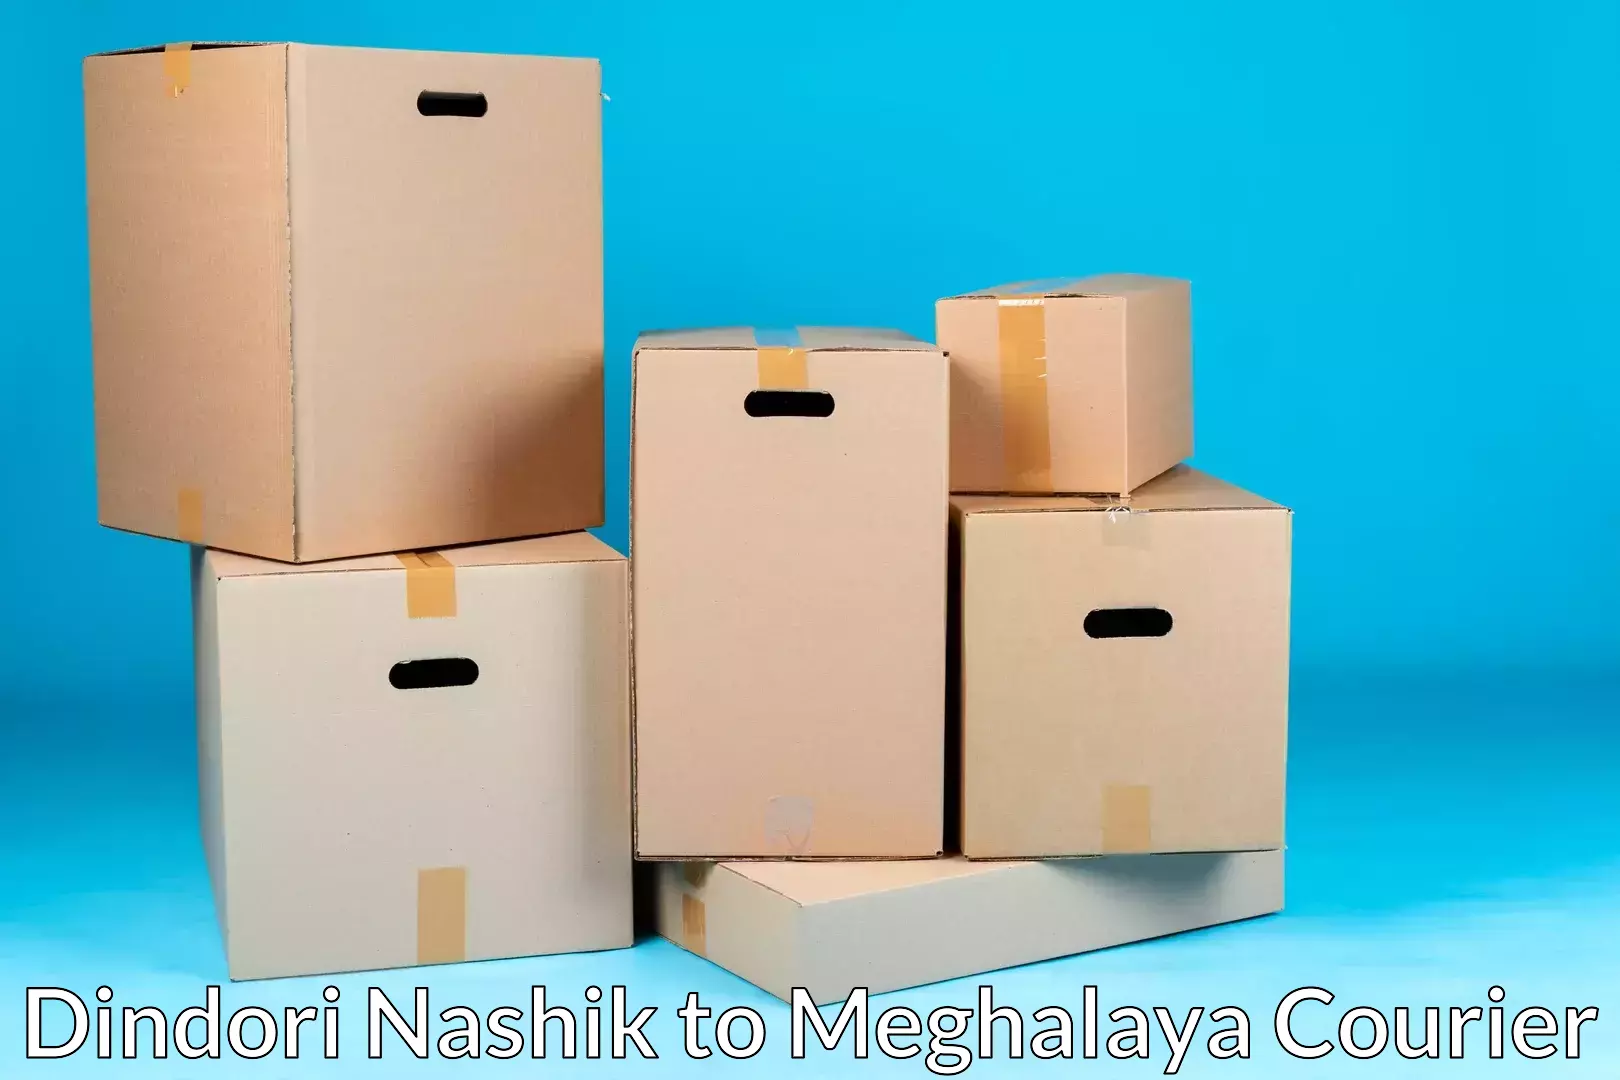 Professional furniture transport Dindori Nashik to Meghalaya